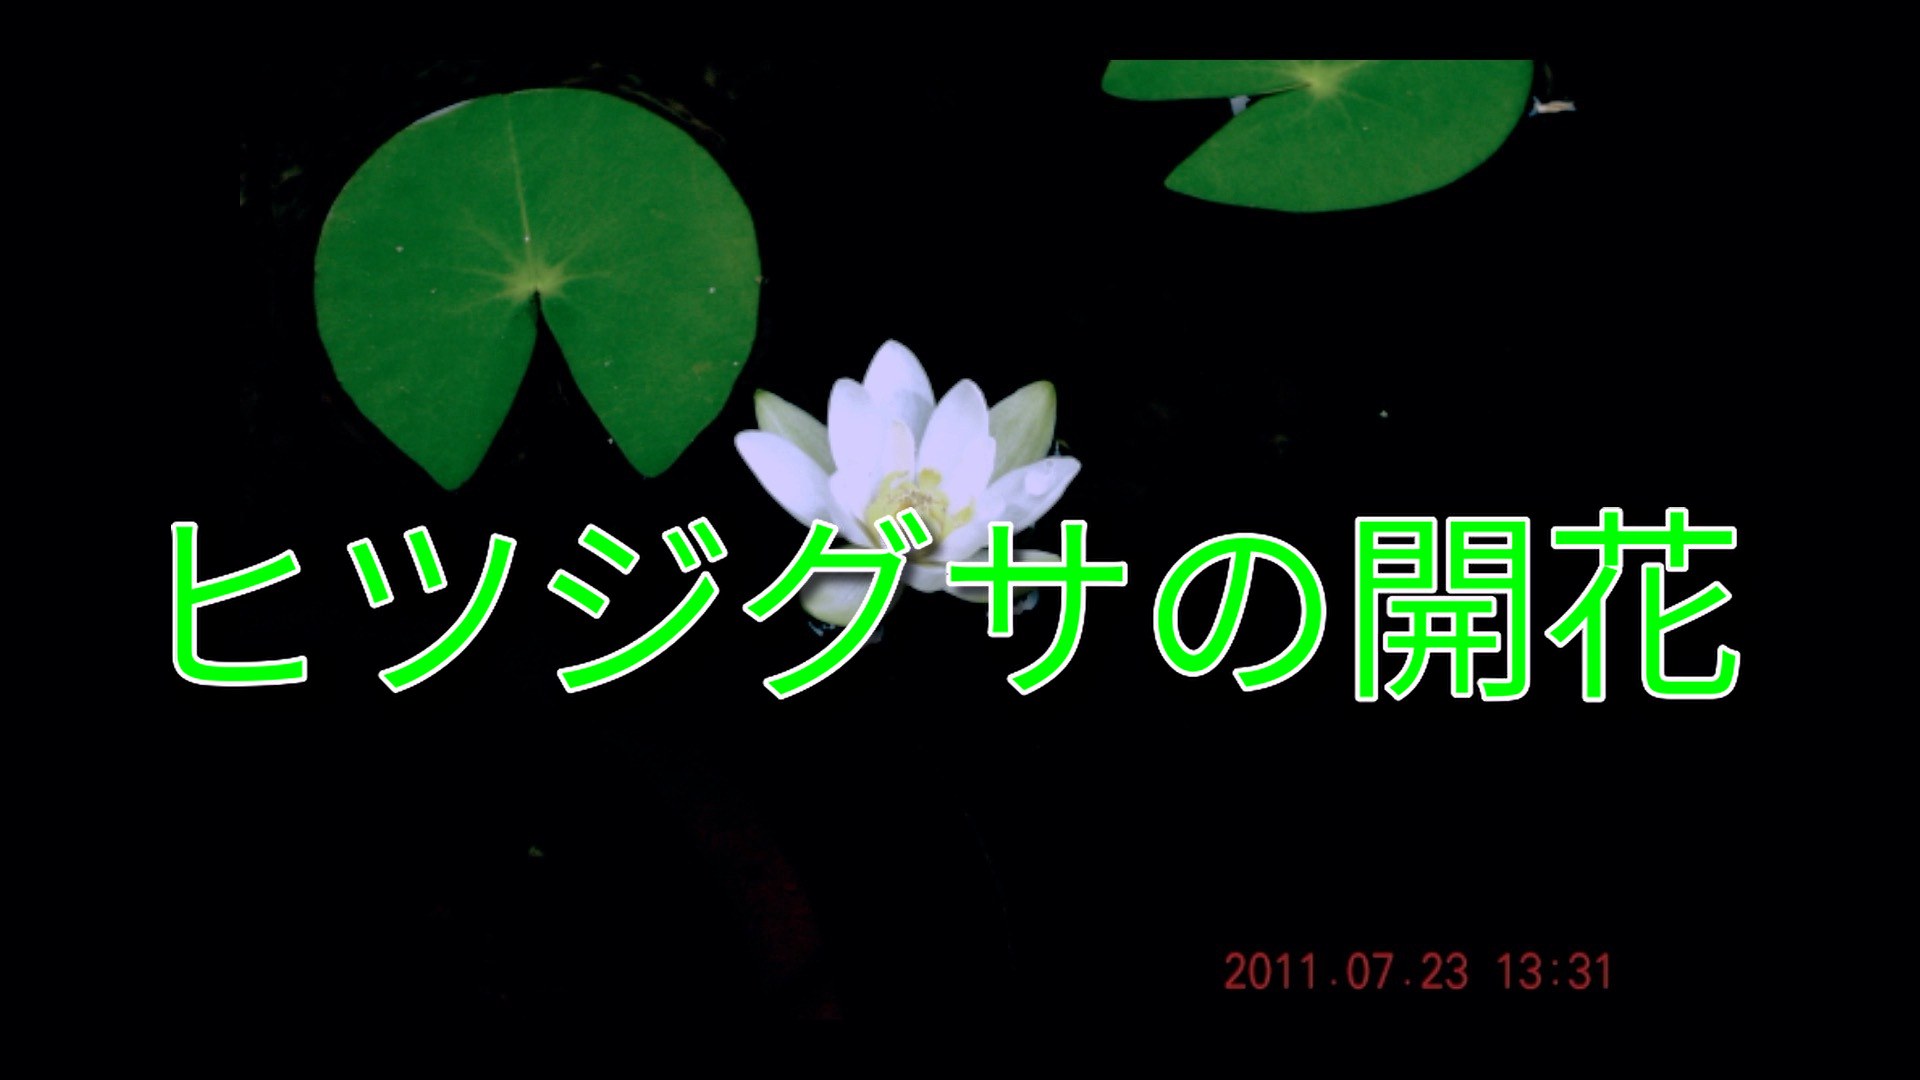 「ヒツジグサの開花」の動画写真です。スレン鉢のヒツジグサをインターバールで写真撮影したものを動画にしました。未の刻（午後１時～３時）に開花することが判ります。